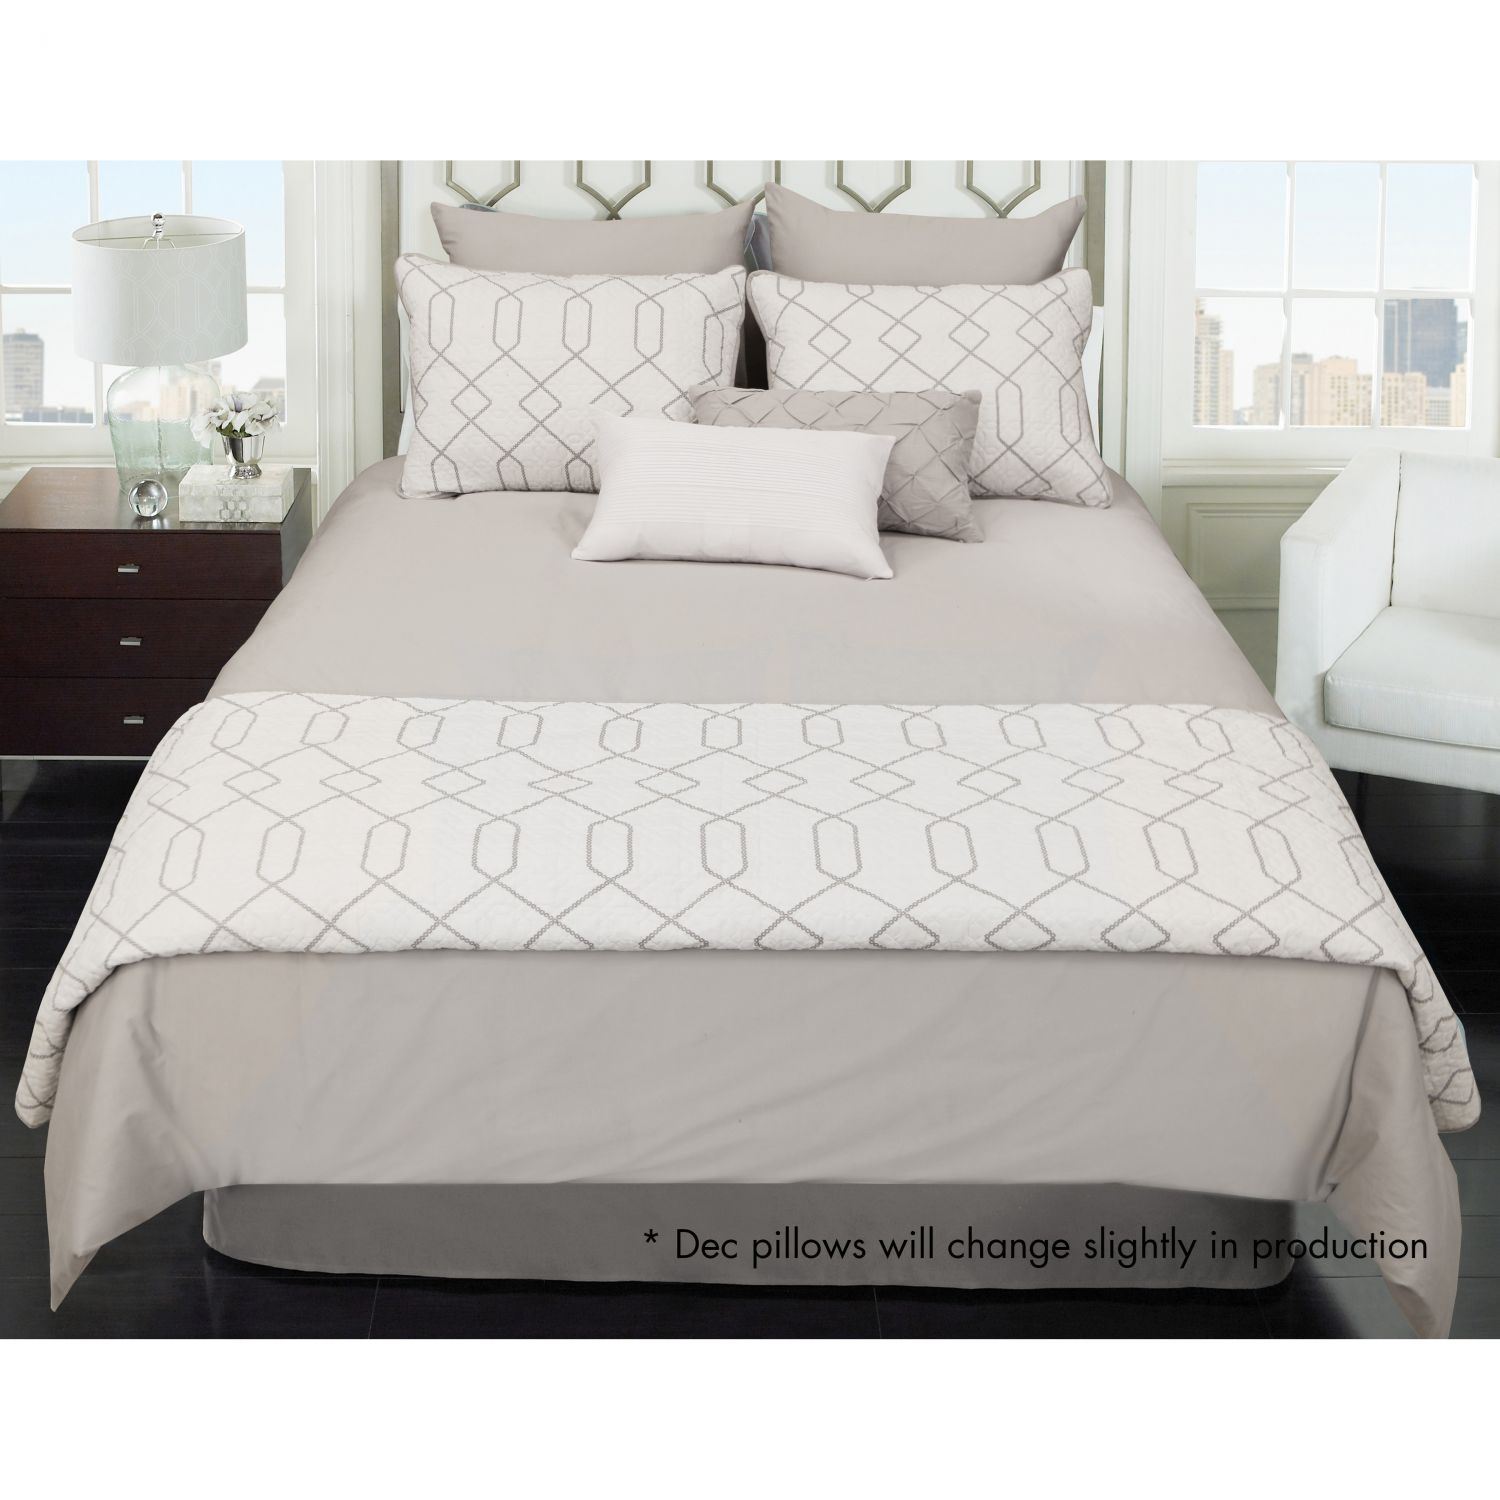 Kensil Queen 8 Piece Comforter Coverlet Bedding Hallmart